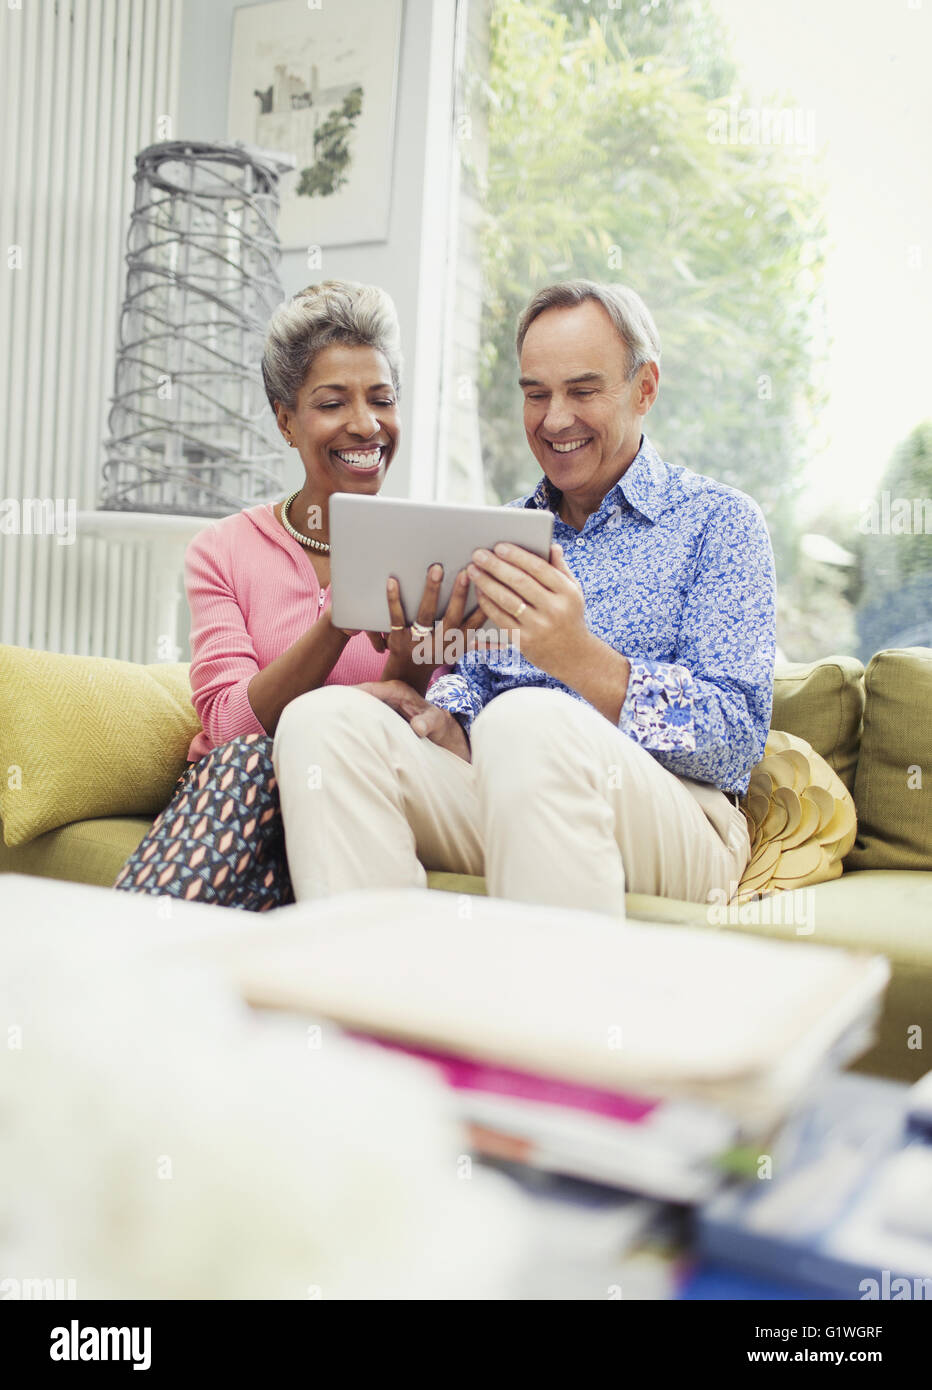 Smiling mature couple sharing digital tablet sur salon canapé Banque D'Images